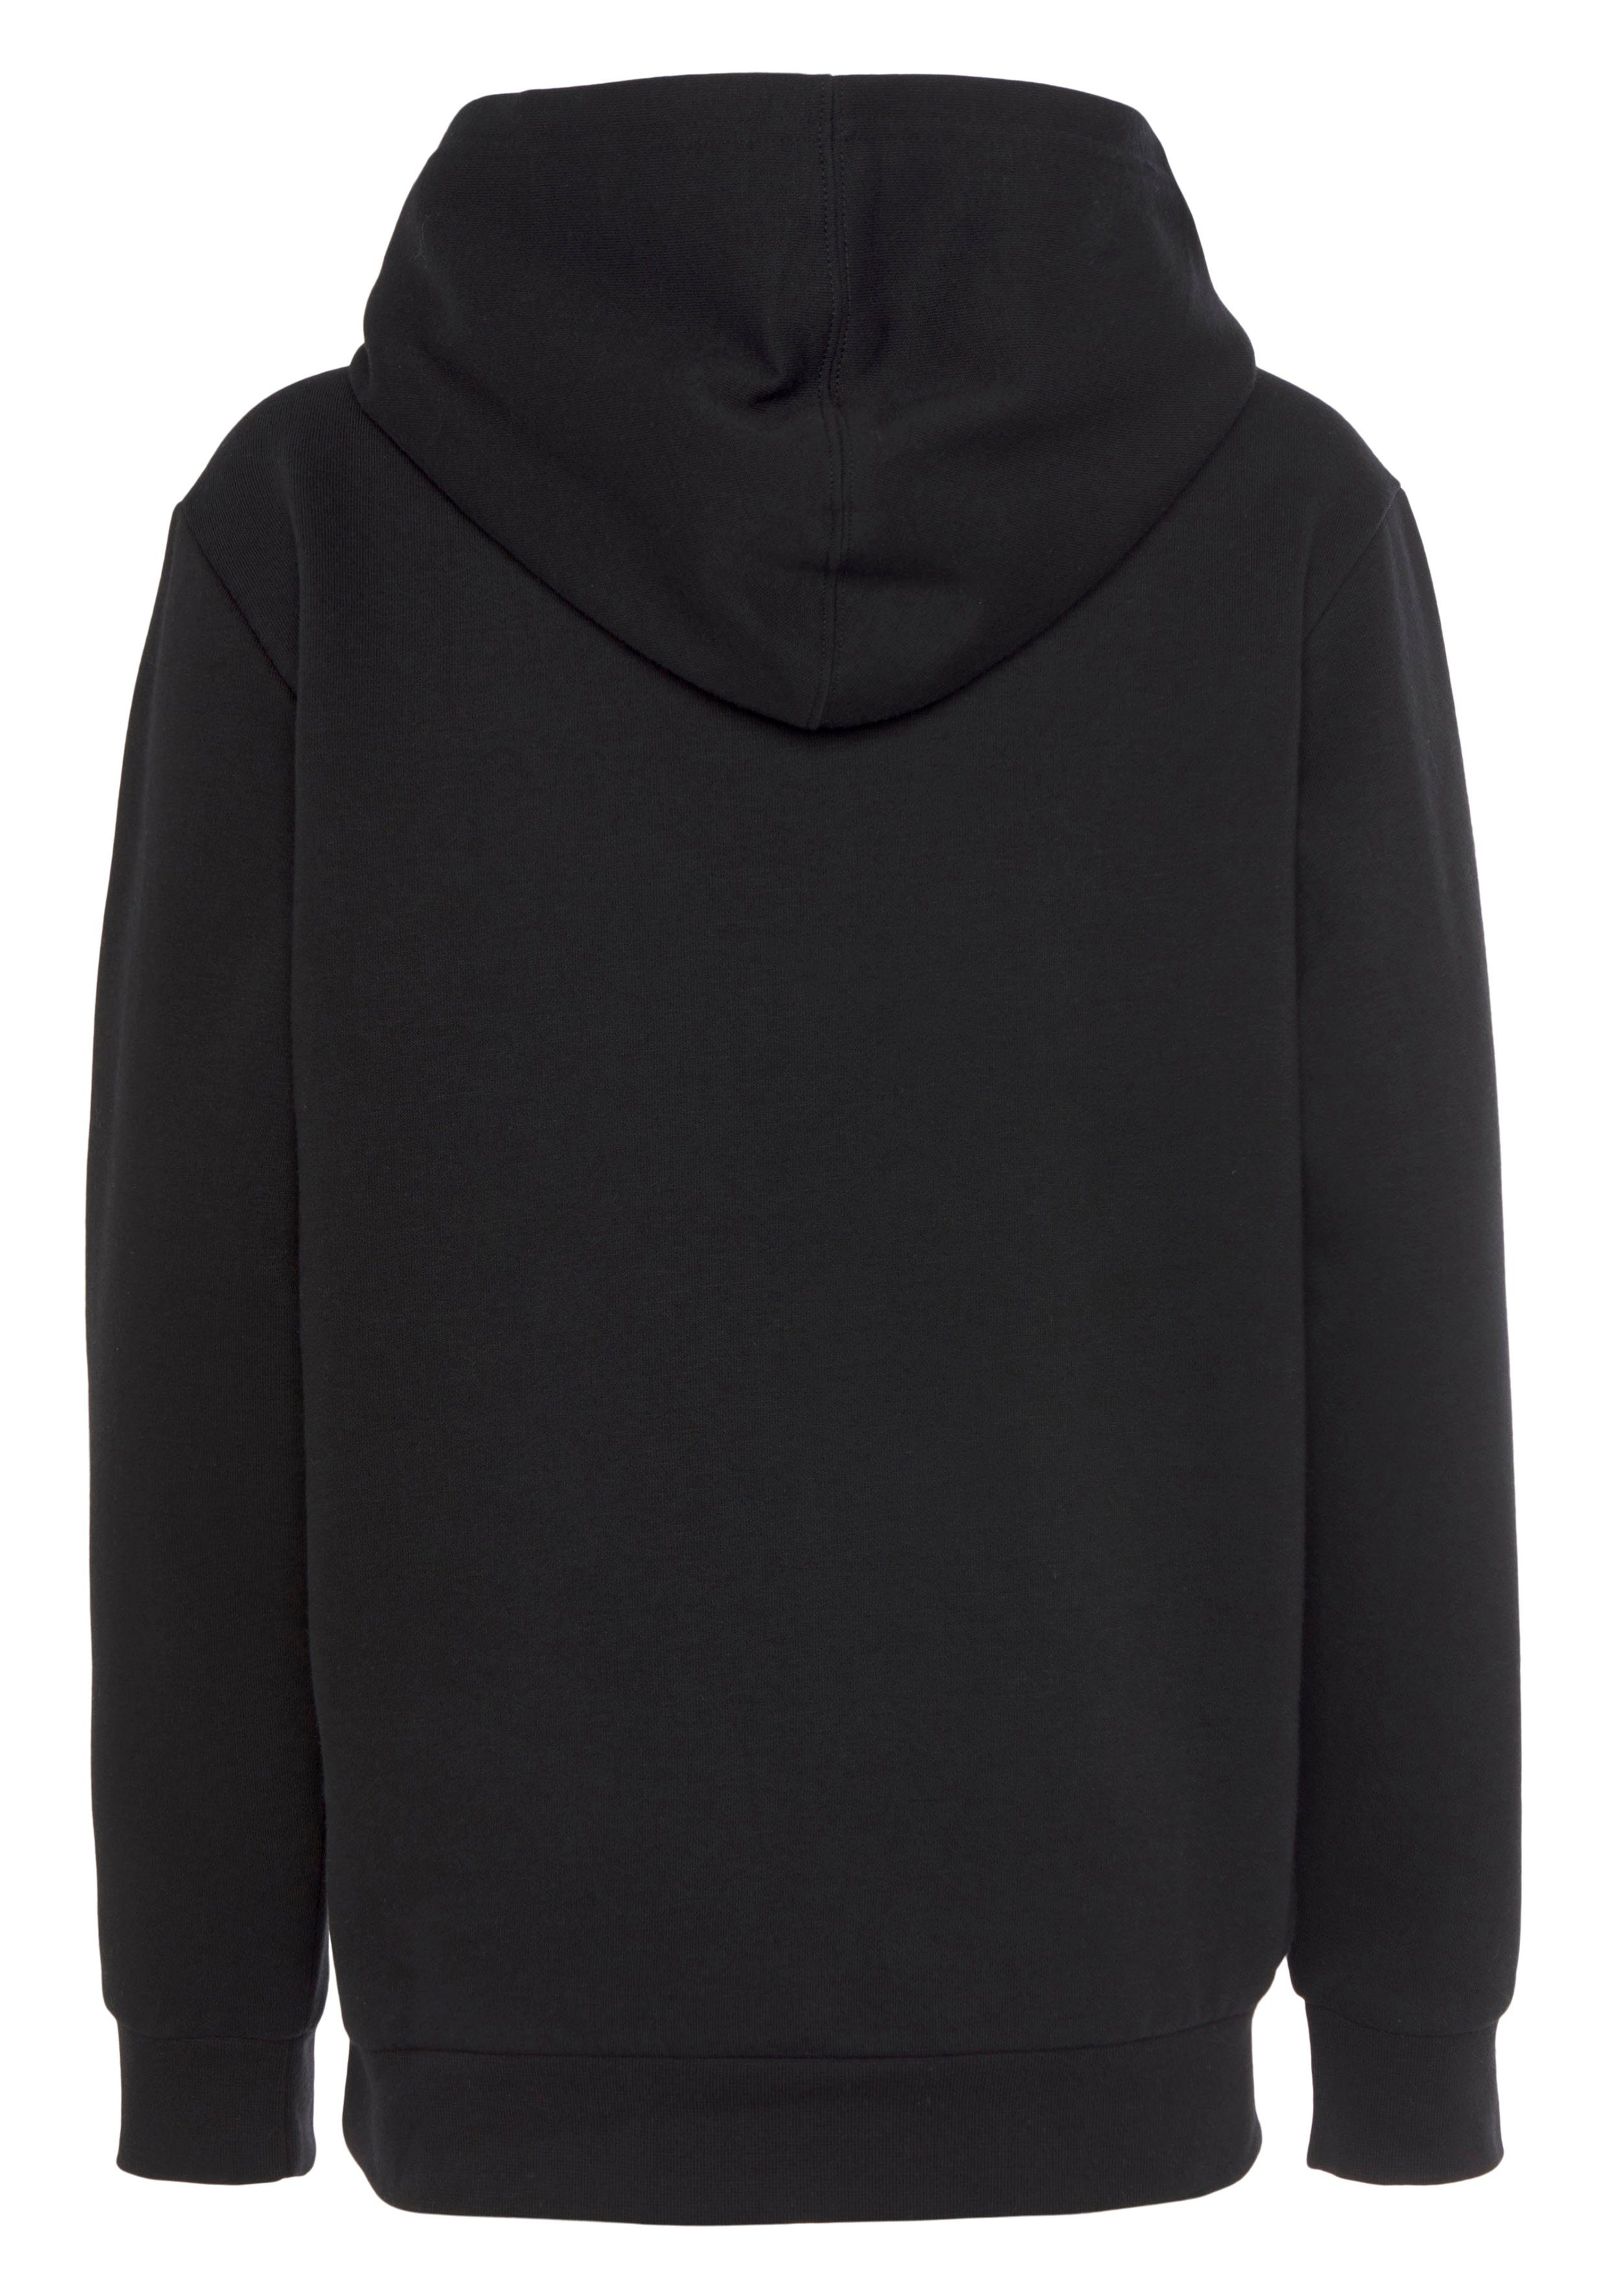 Champion Sweatshirt Basic Hooded schwarz - Sweatshirt für Kinder